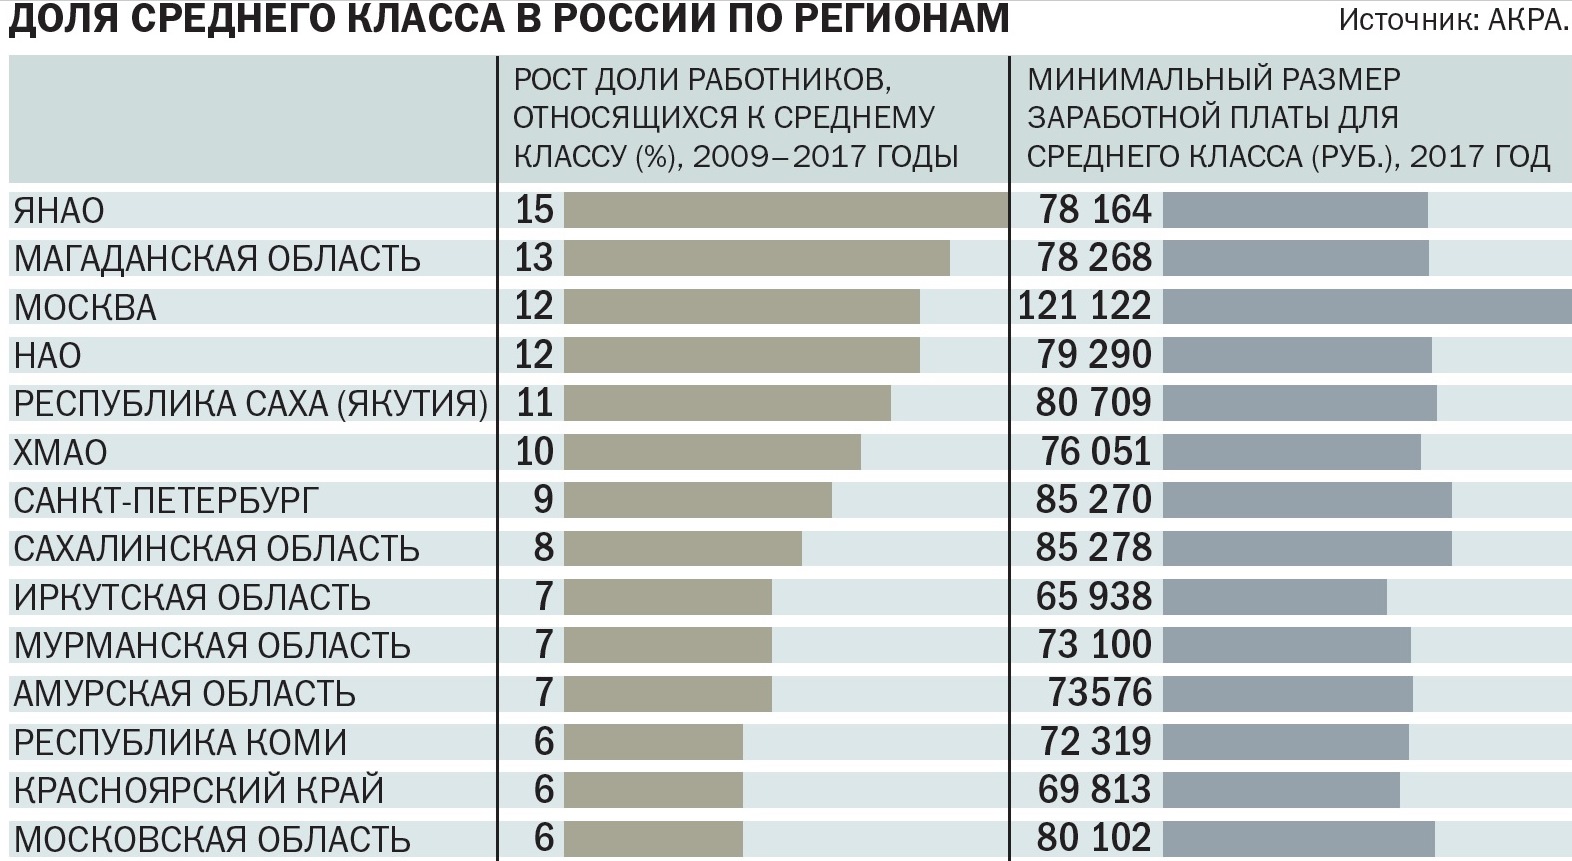 Средняя зарплата в России среднего класса